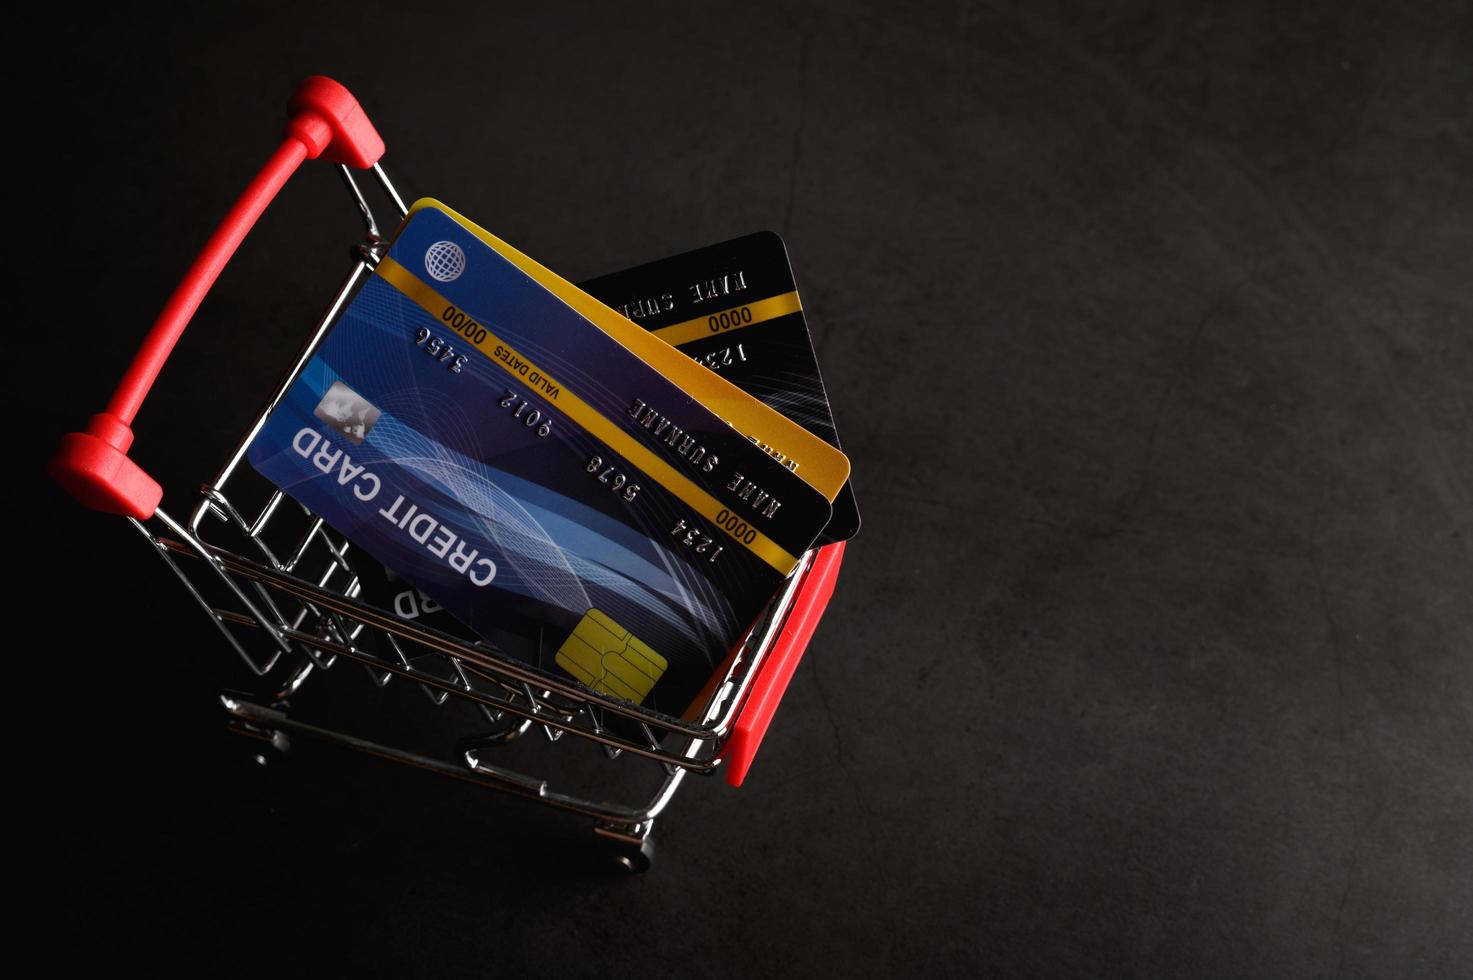 tarjeta de crédito colocada en el carrito para pagar el producto foto